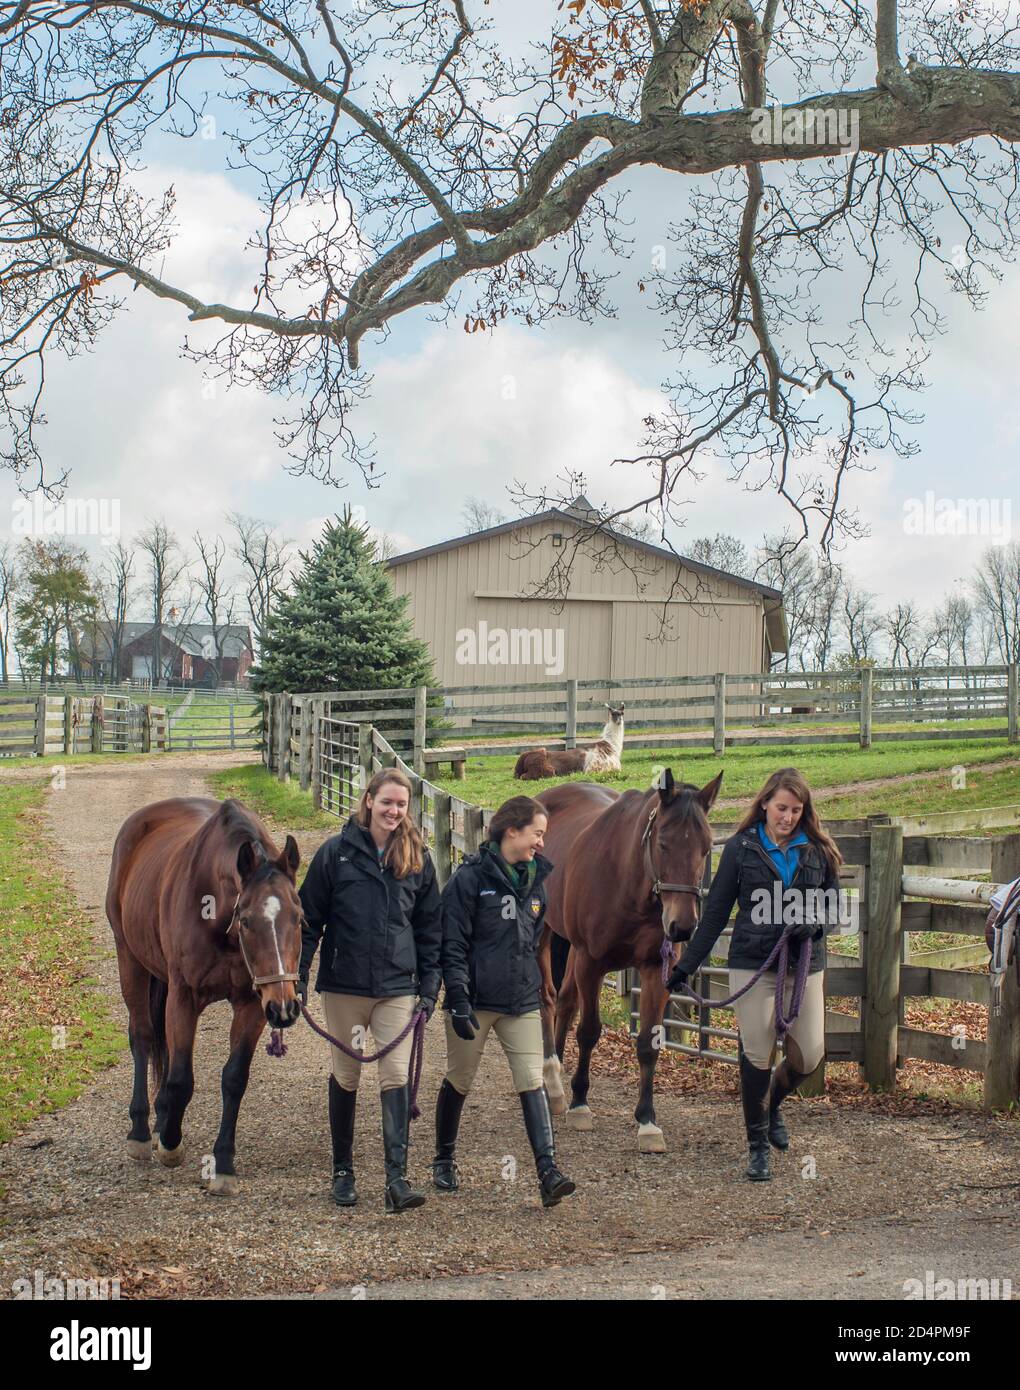 El equipo ecuestre de las muchachas adolescentes conduce a los caballos a la pastura en invierno Foto de stock